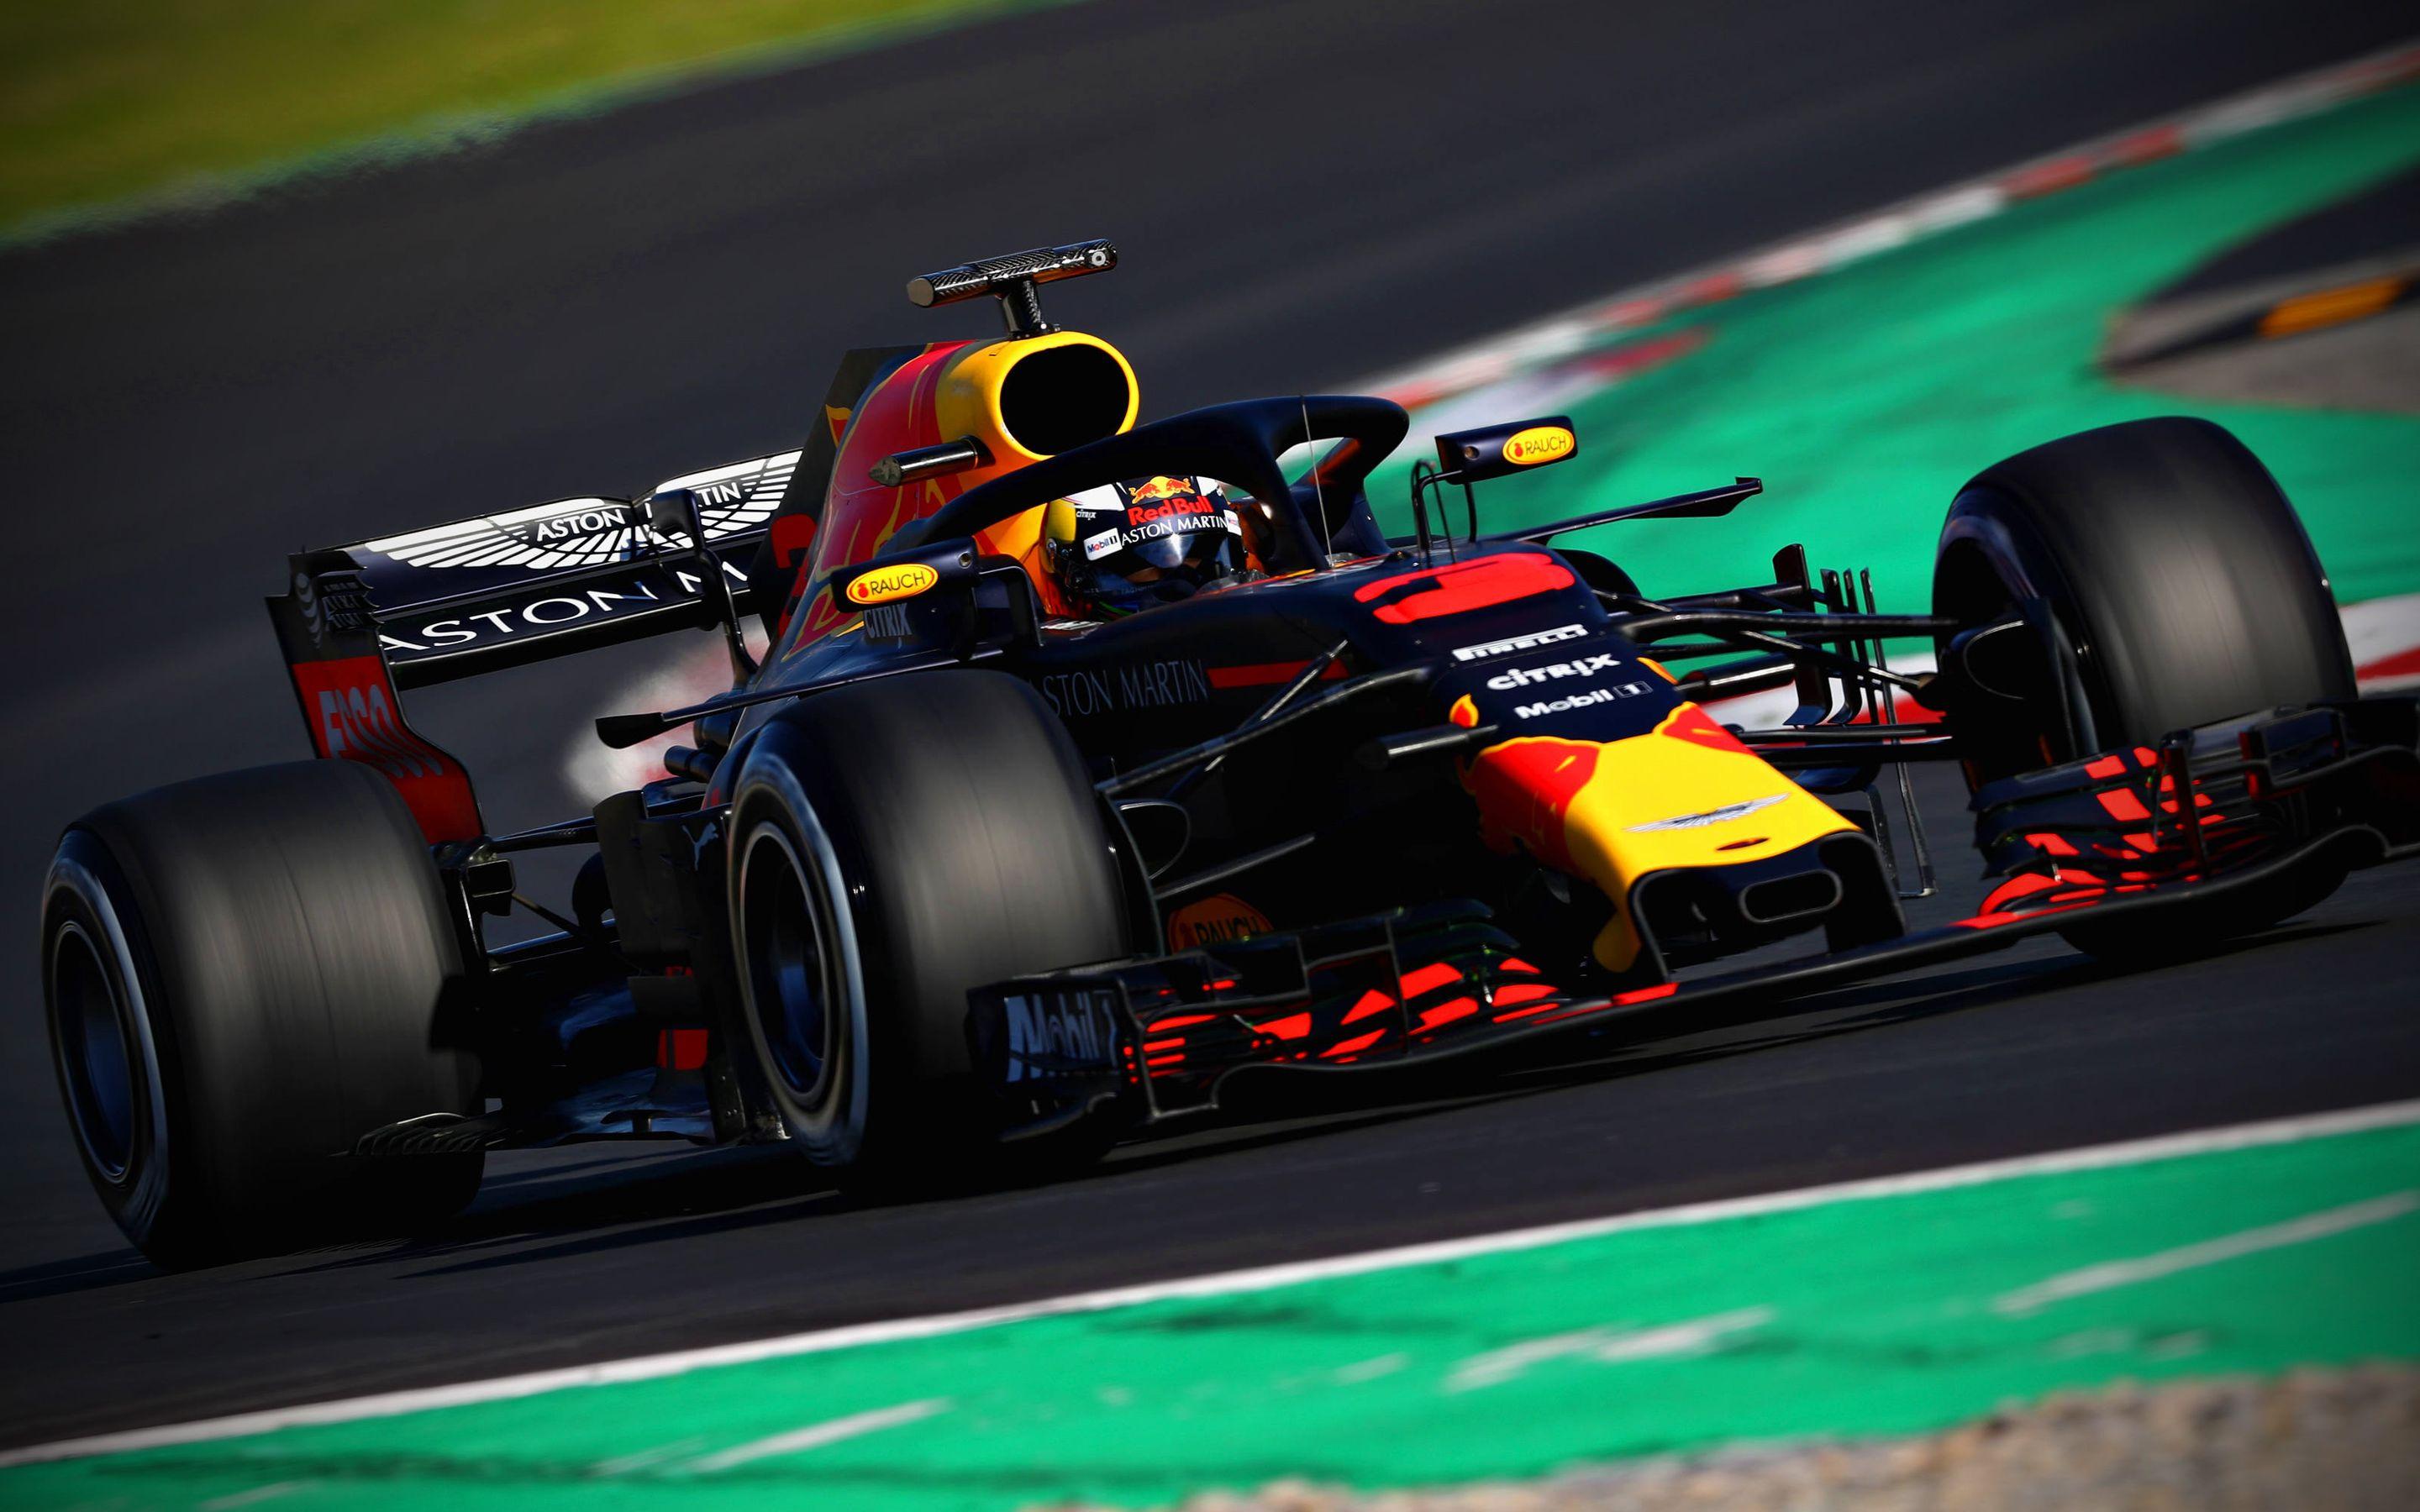 Download Wallpaper 4k, Daniel Ricciardo, Close Up, Raceway, 2018